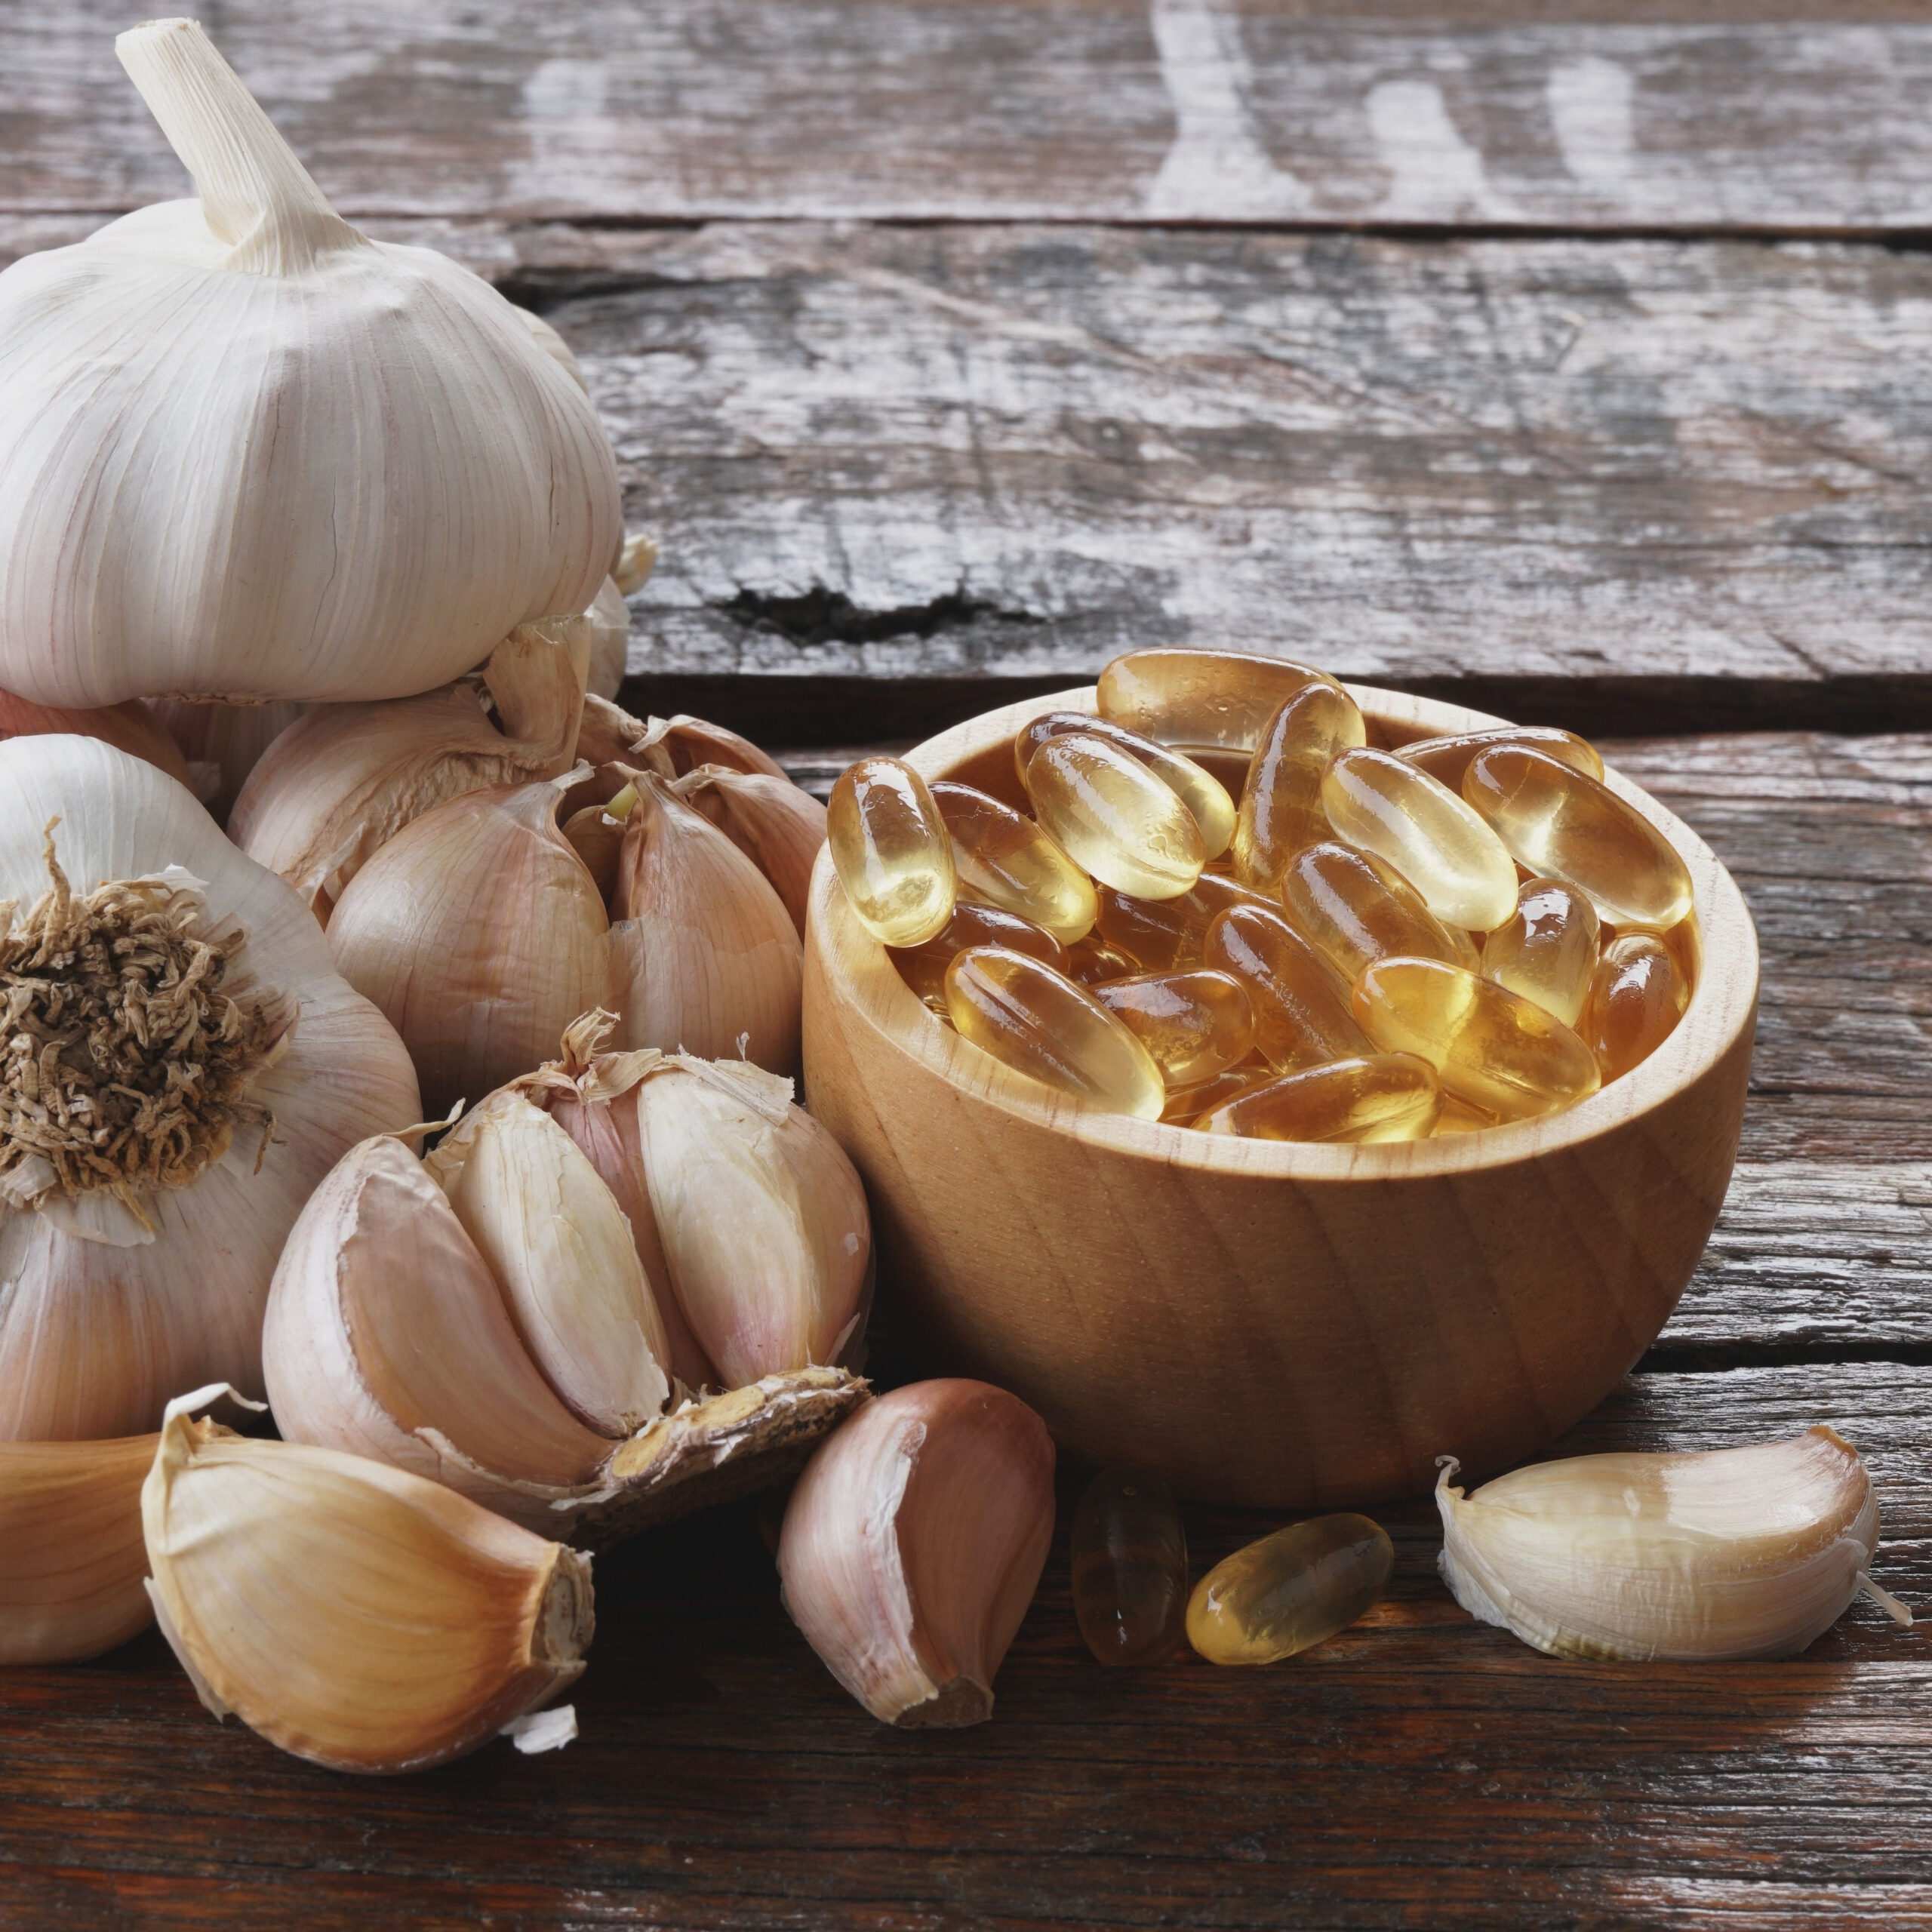 garlic supplements